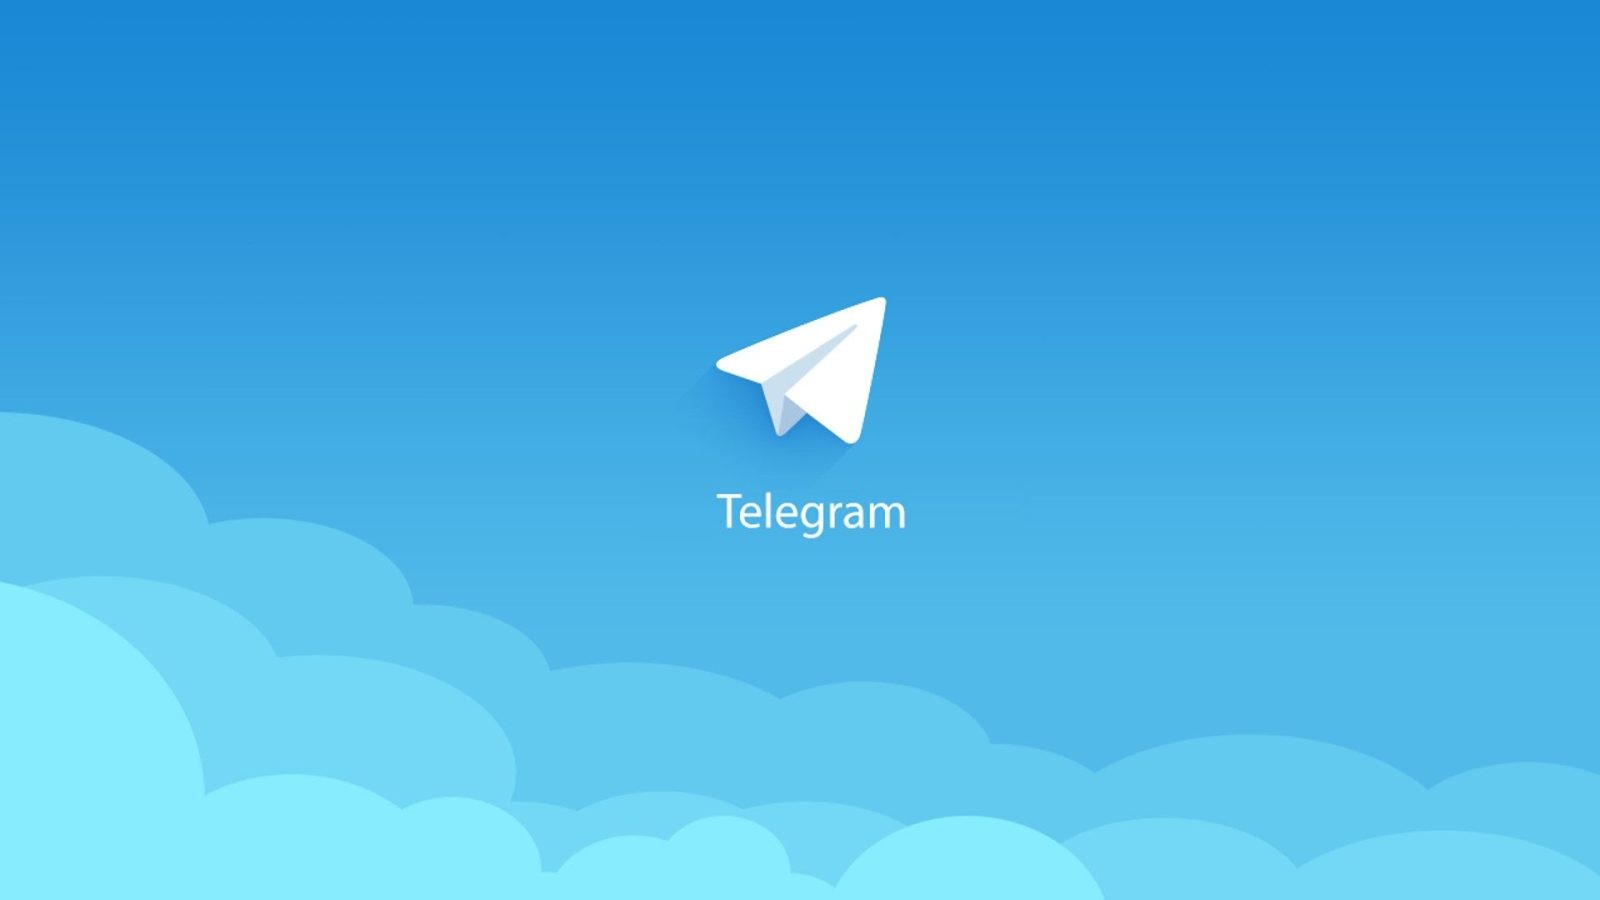 برنامه Telegram تماس تصویری گروهی و پس زمینه های انیمیشنی را به آن اضافه کرد